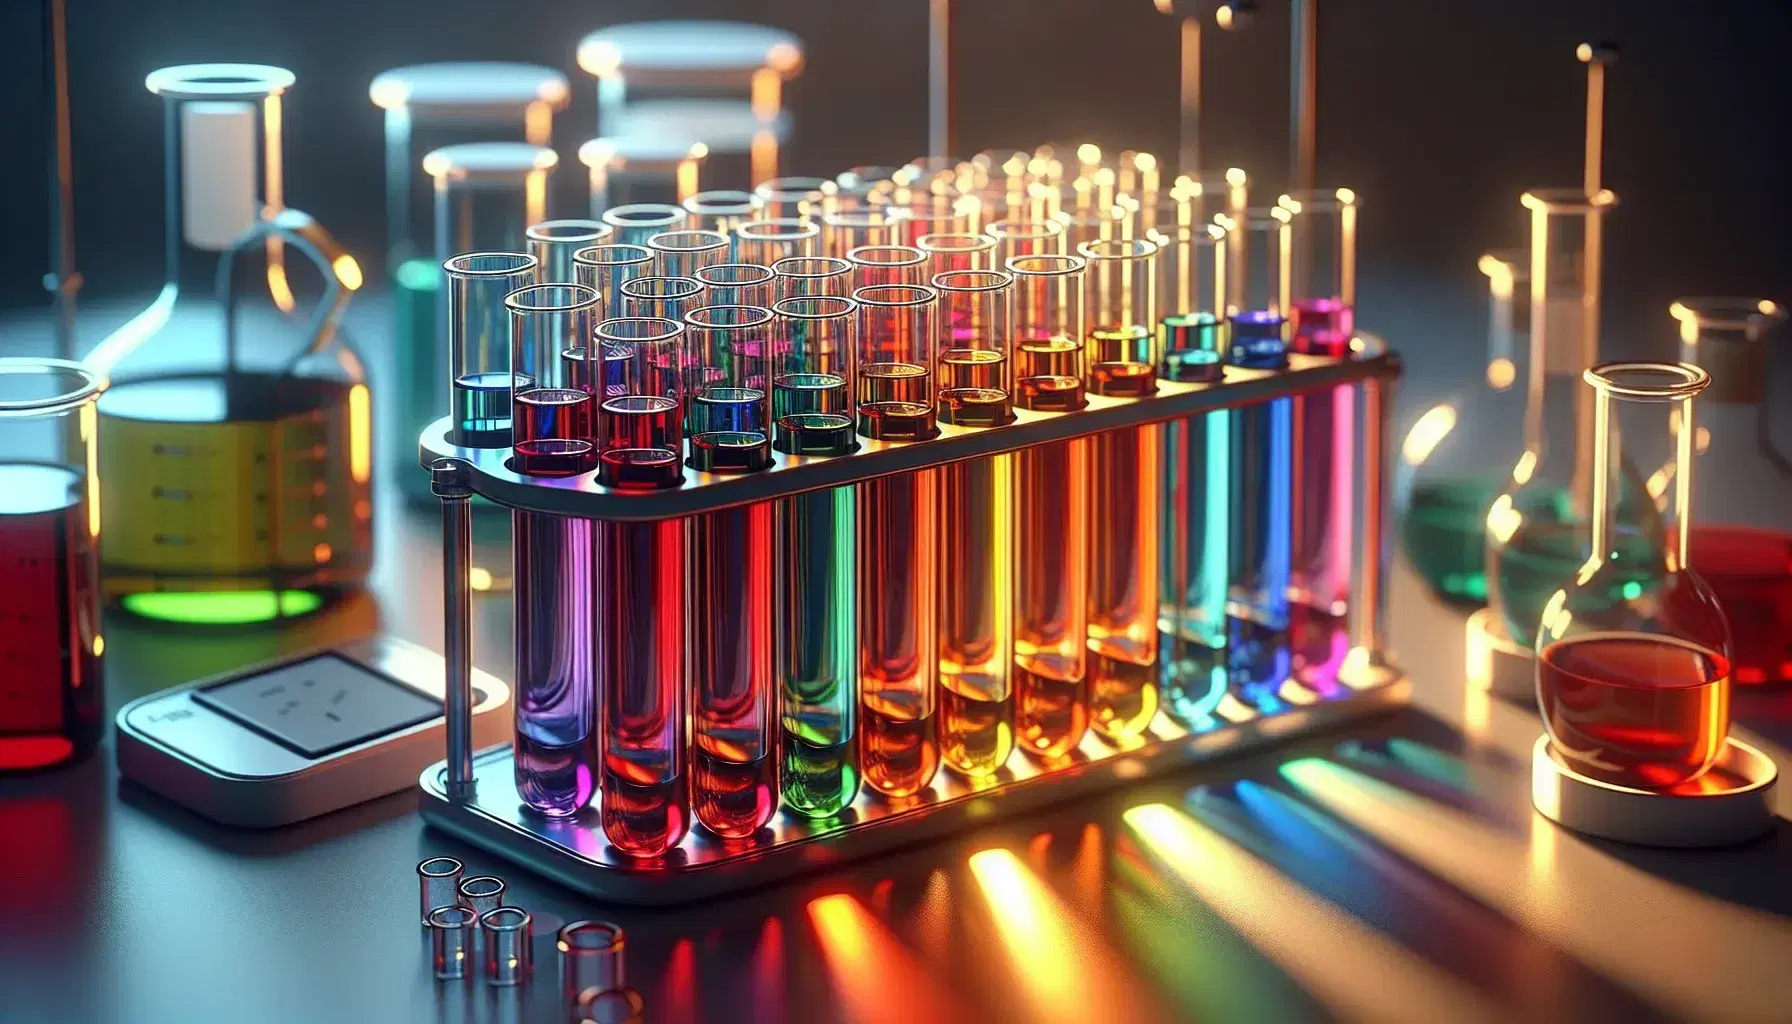 Primer plano de tubos de ensayo de vidrio con líquidos de colores del arcoíris en soporte metálico, con balanza de laboratorio y frascos al fondo.